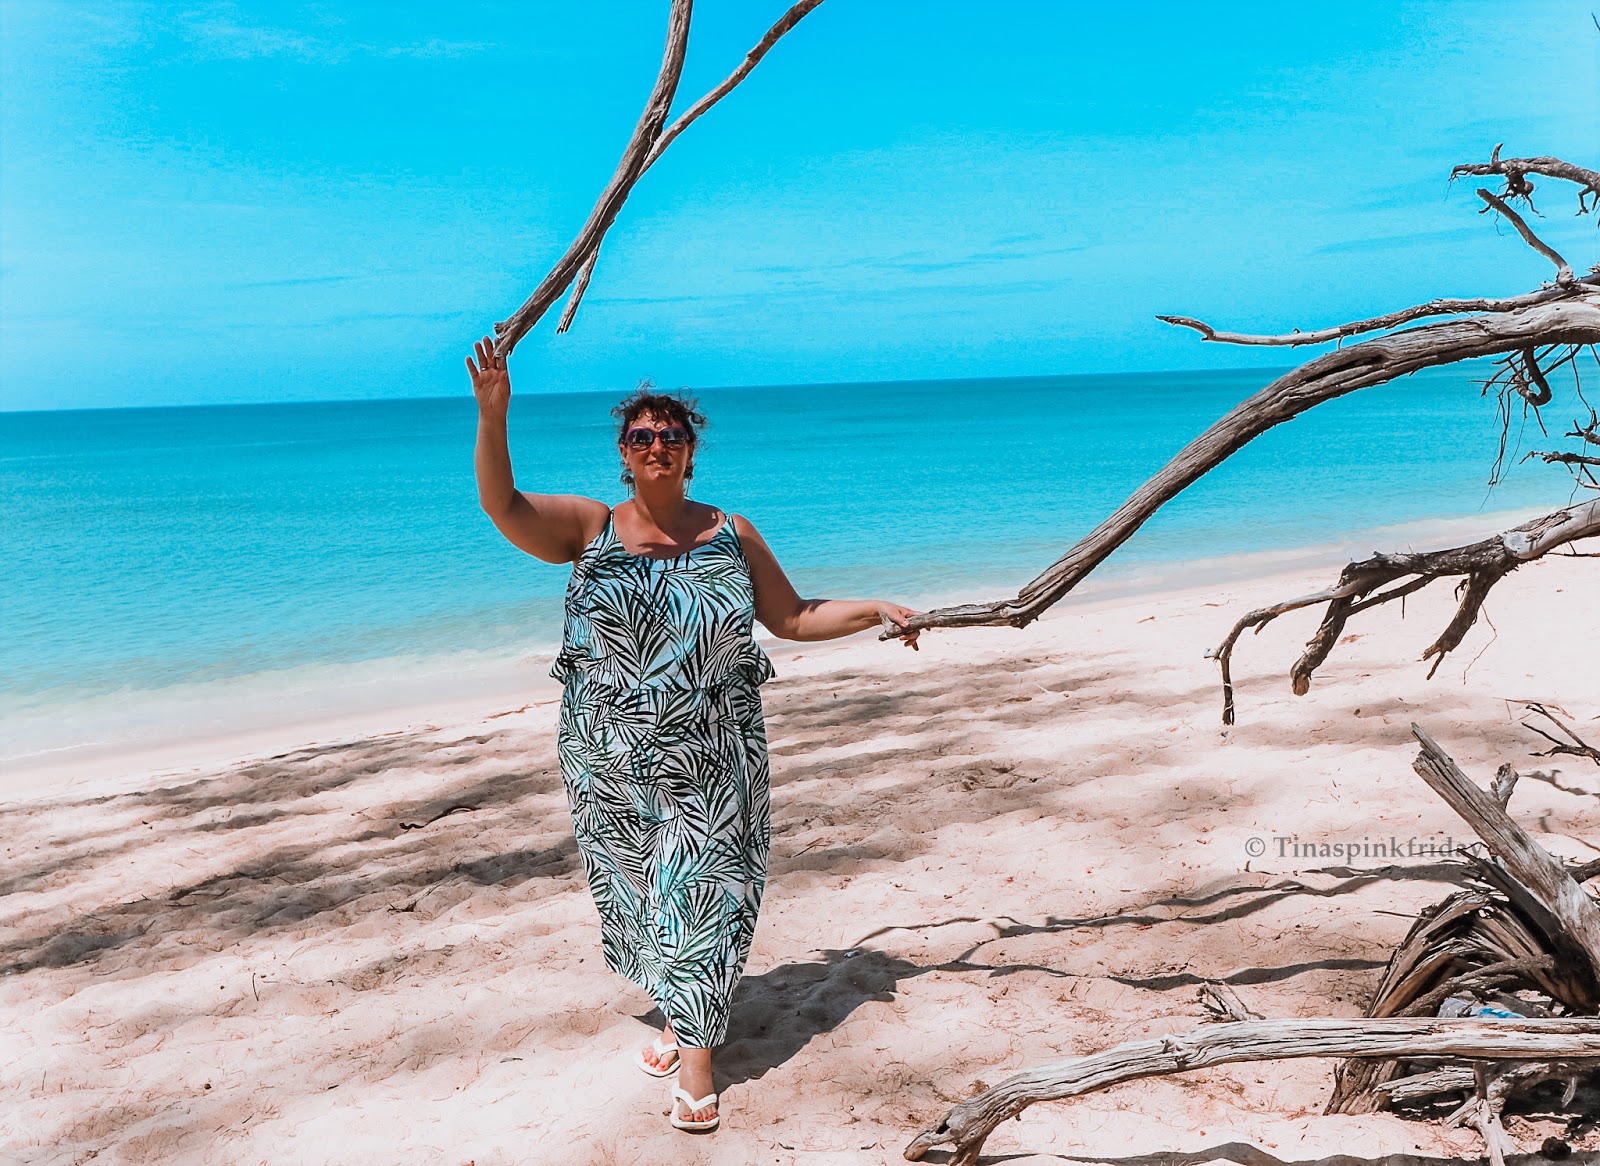 Ein Kleid nur für den Urlaub?! | Tinaspinkfriday - Modeblog - Outfit  Inspiration in großer Größe